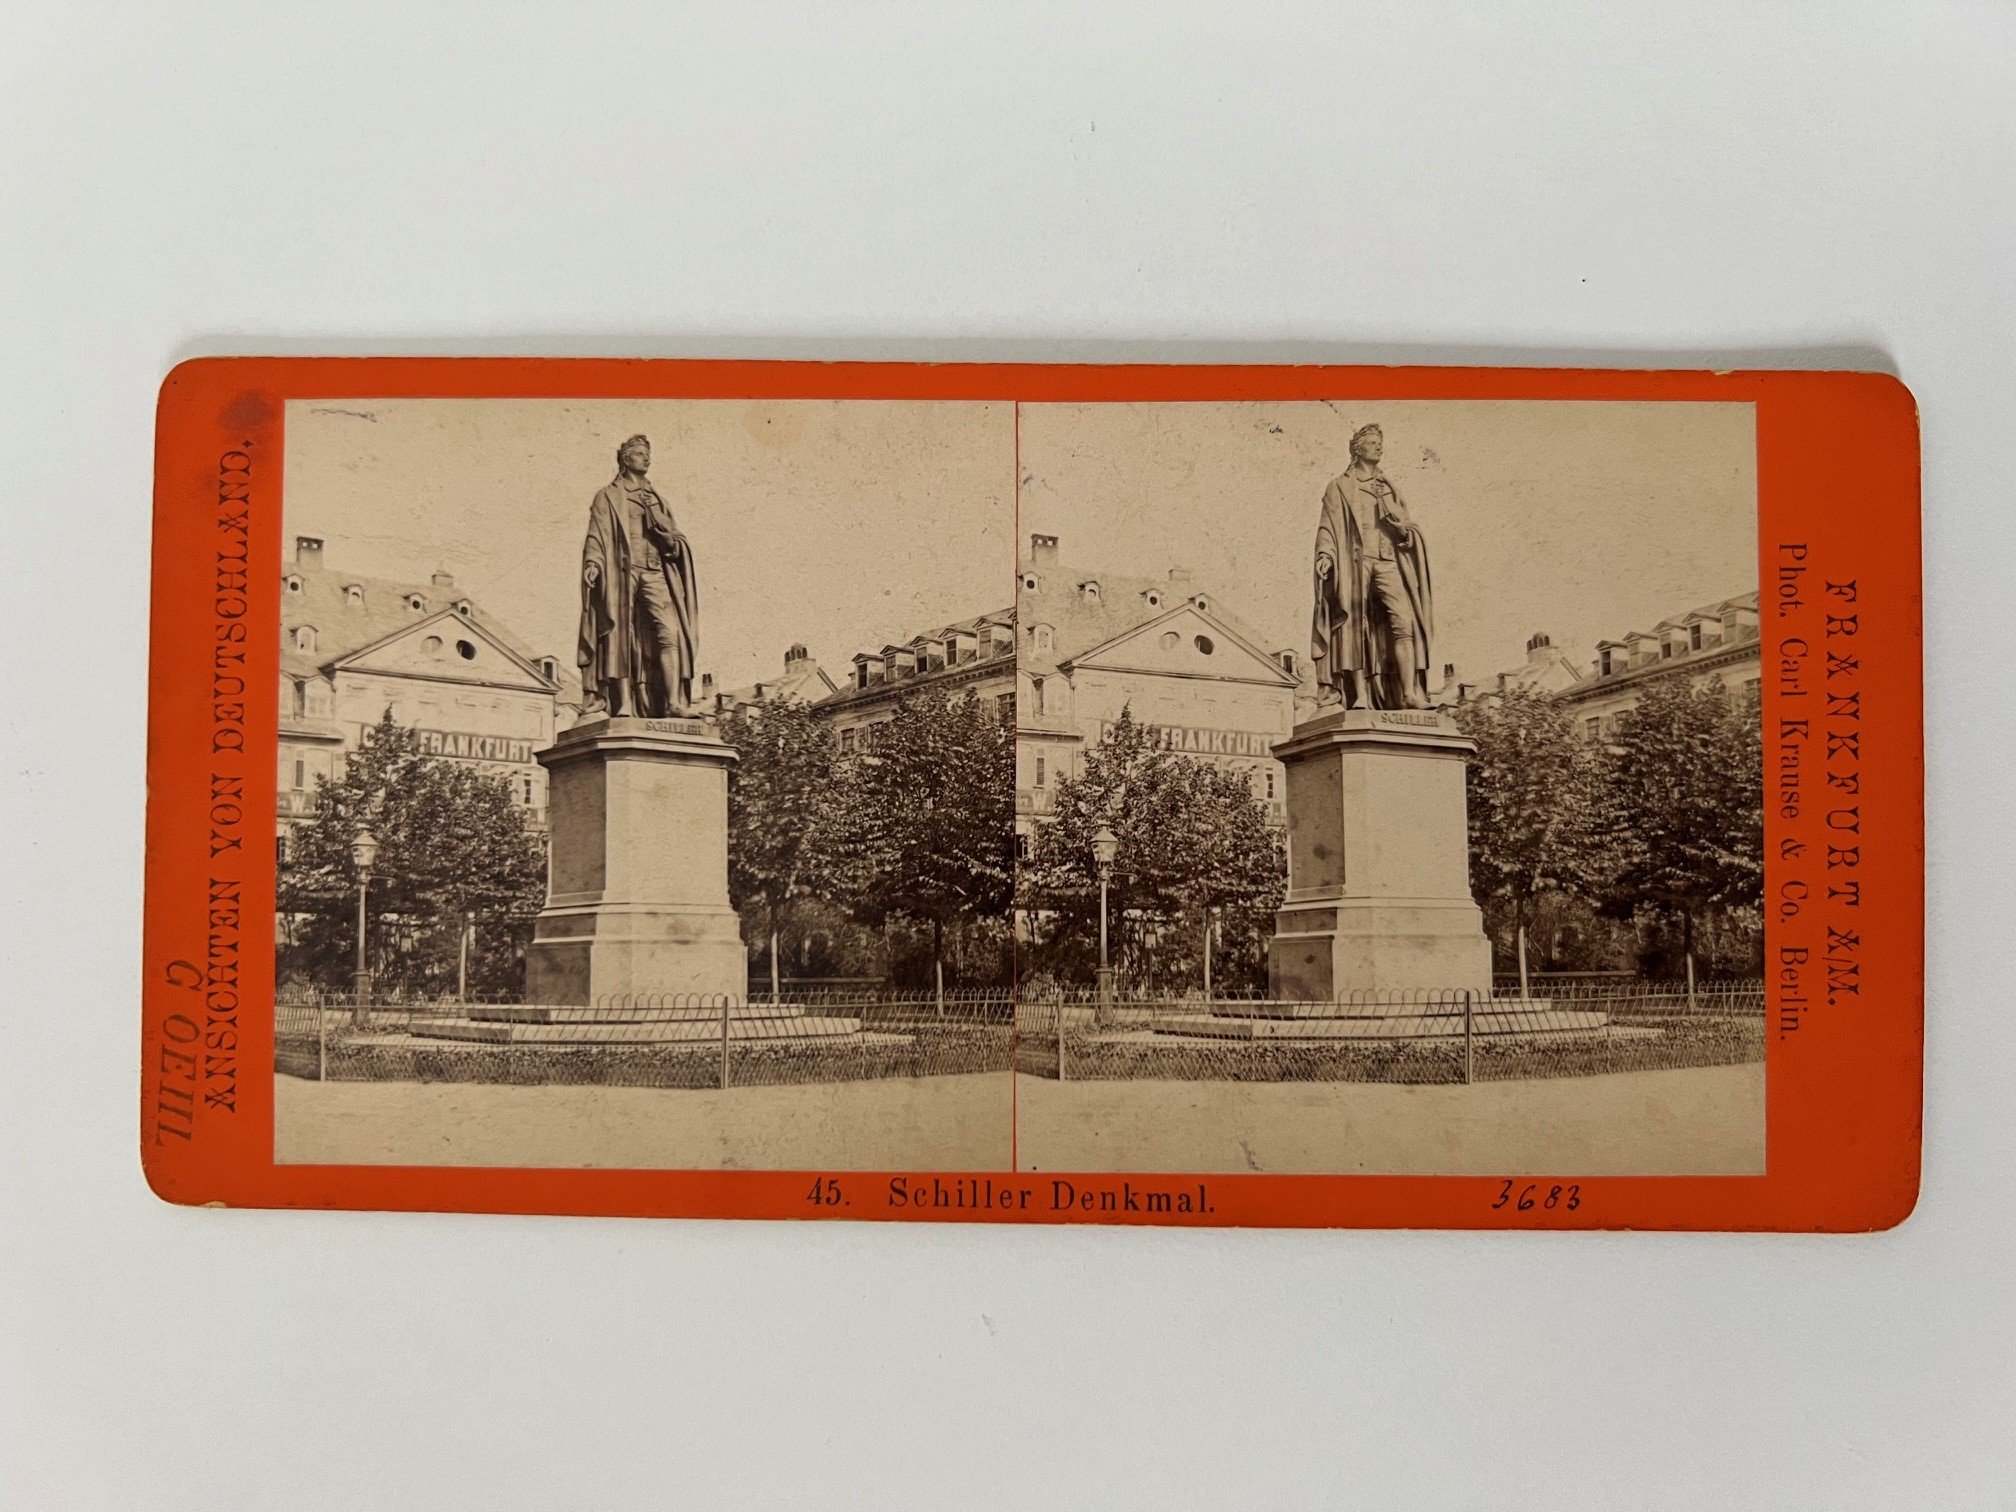 Stereobild, Carl Krause, Frankfurt, Nr. 45, Schiller-Denkmal, ca. 1880. (Taunus-Rhein-Main - Regionalgeschichtliche Sammlung Dr. Stefan Naas CC BY-NC-SA)